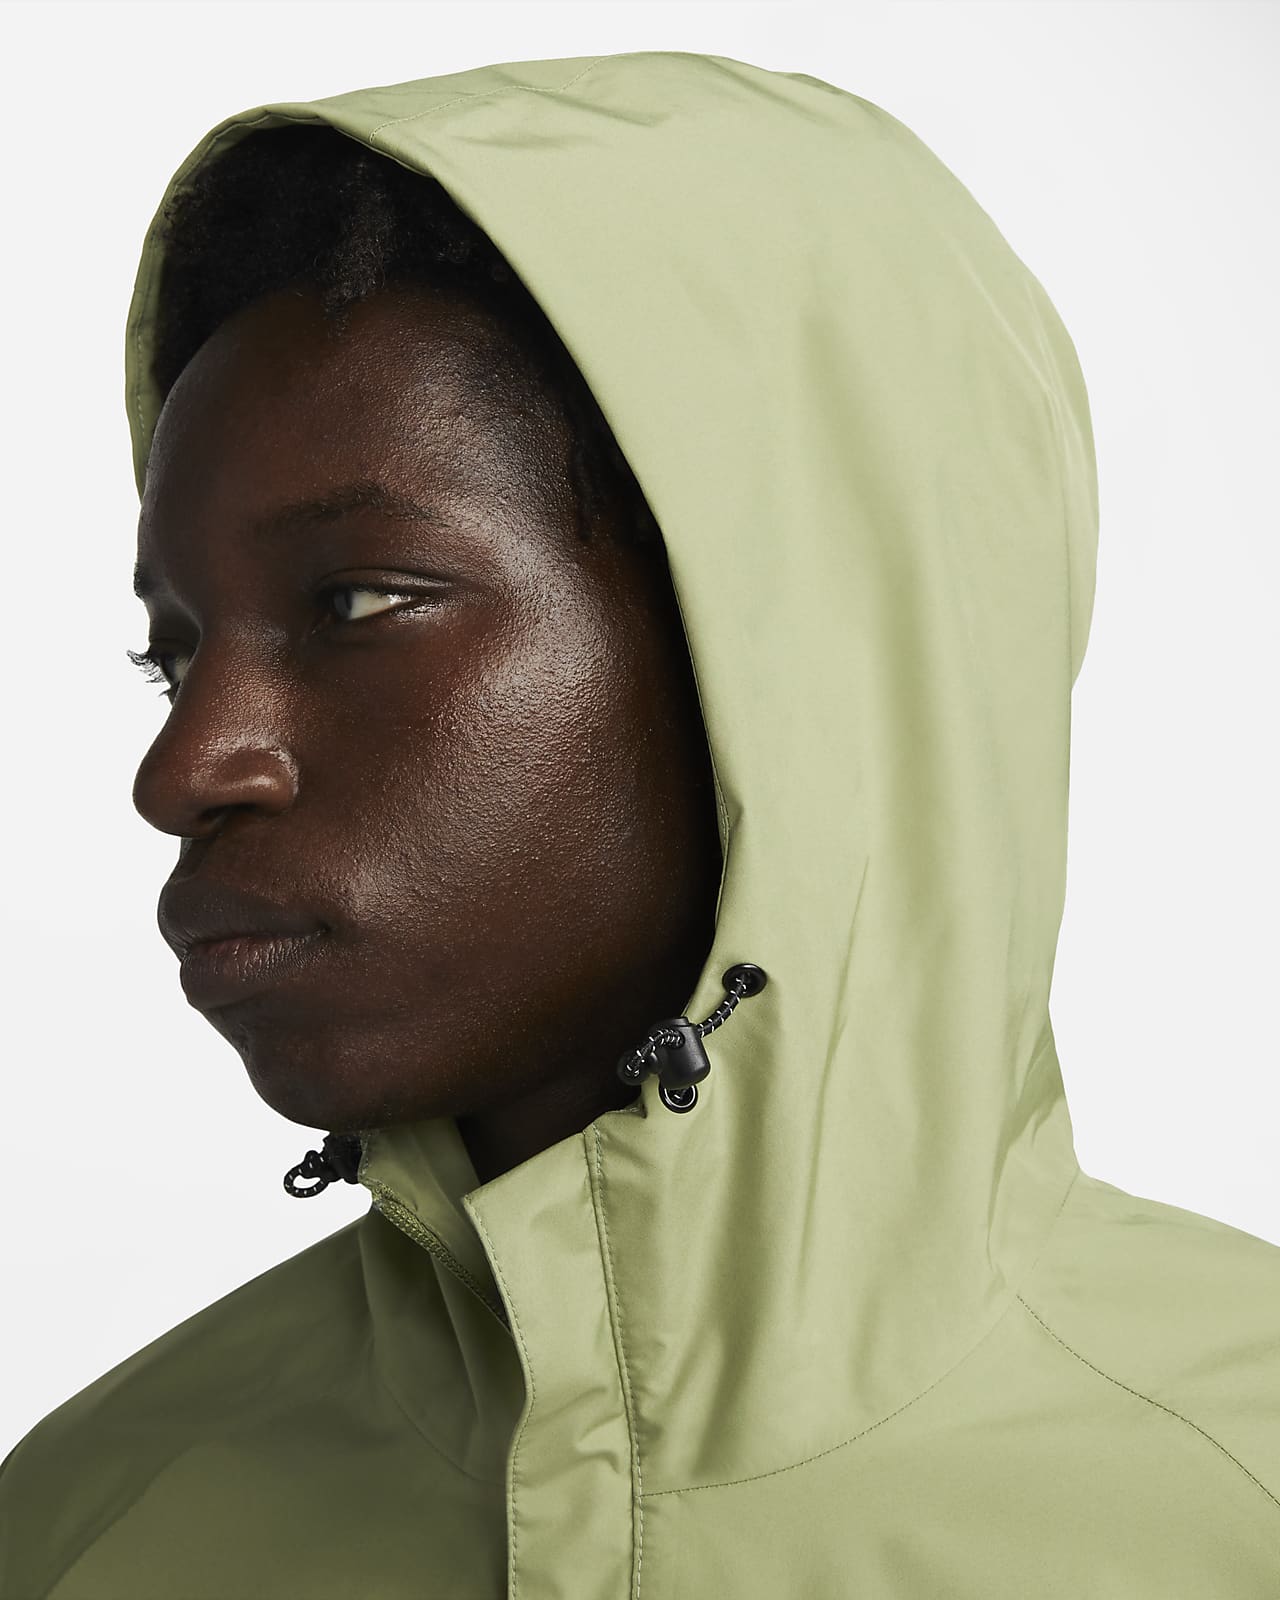 Nike Sportswear Storm-FIT Legacy Men\'s Hooded Shell Jacket.